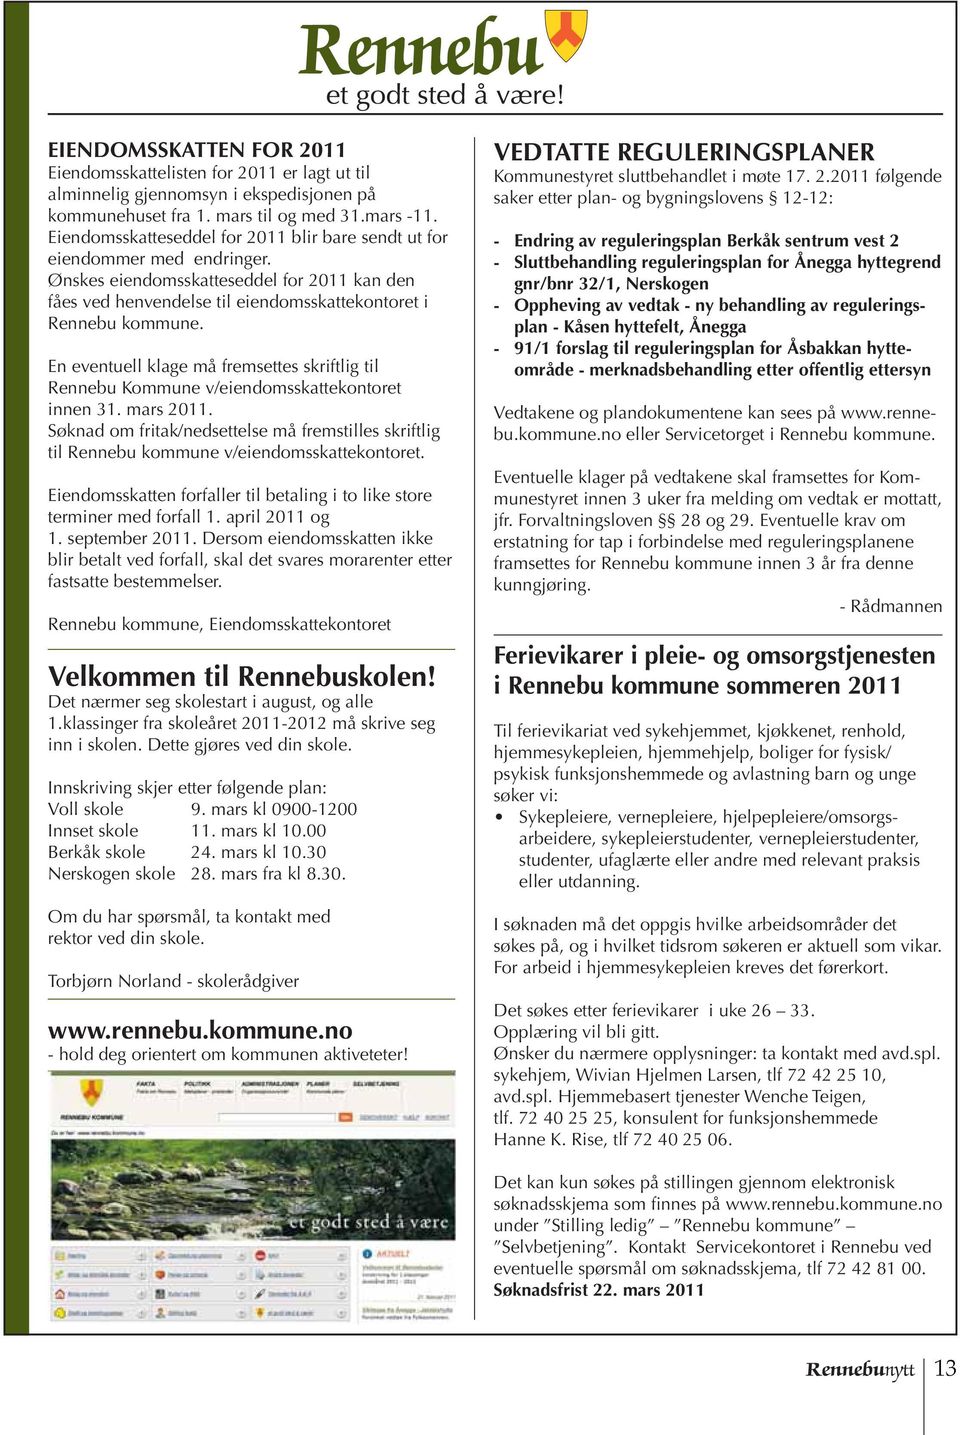 En eventuell klage må fremsettes skriftlig til Rennebu Kommune v/eiendomsskattekontoret innen 31. mars 2011.